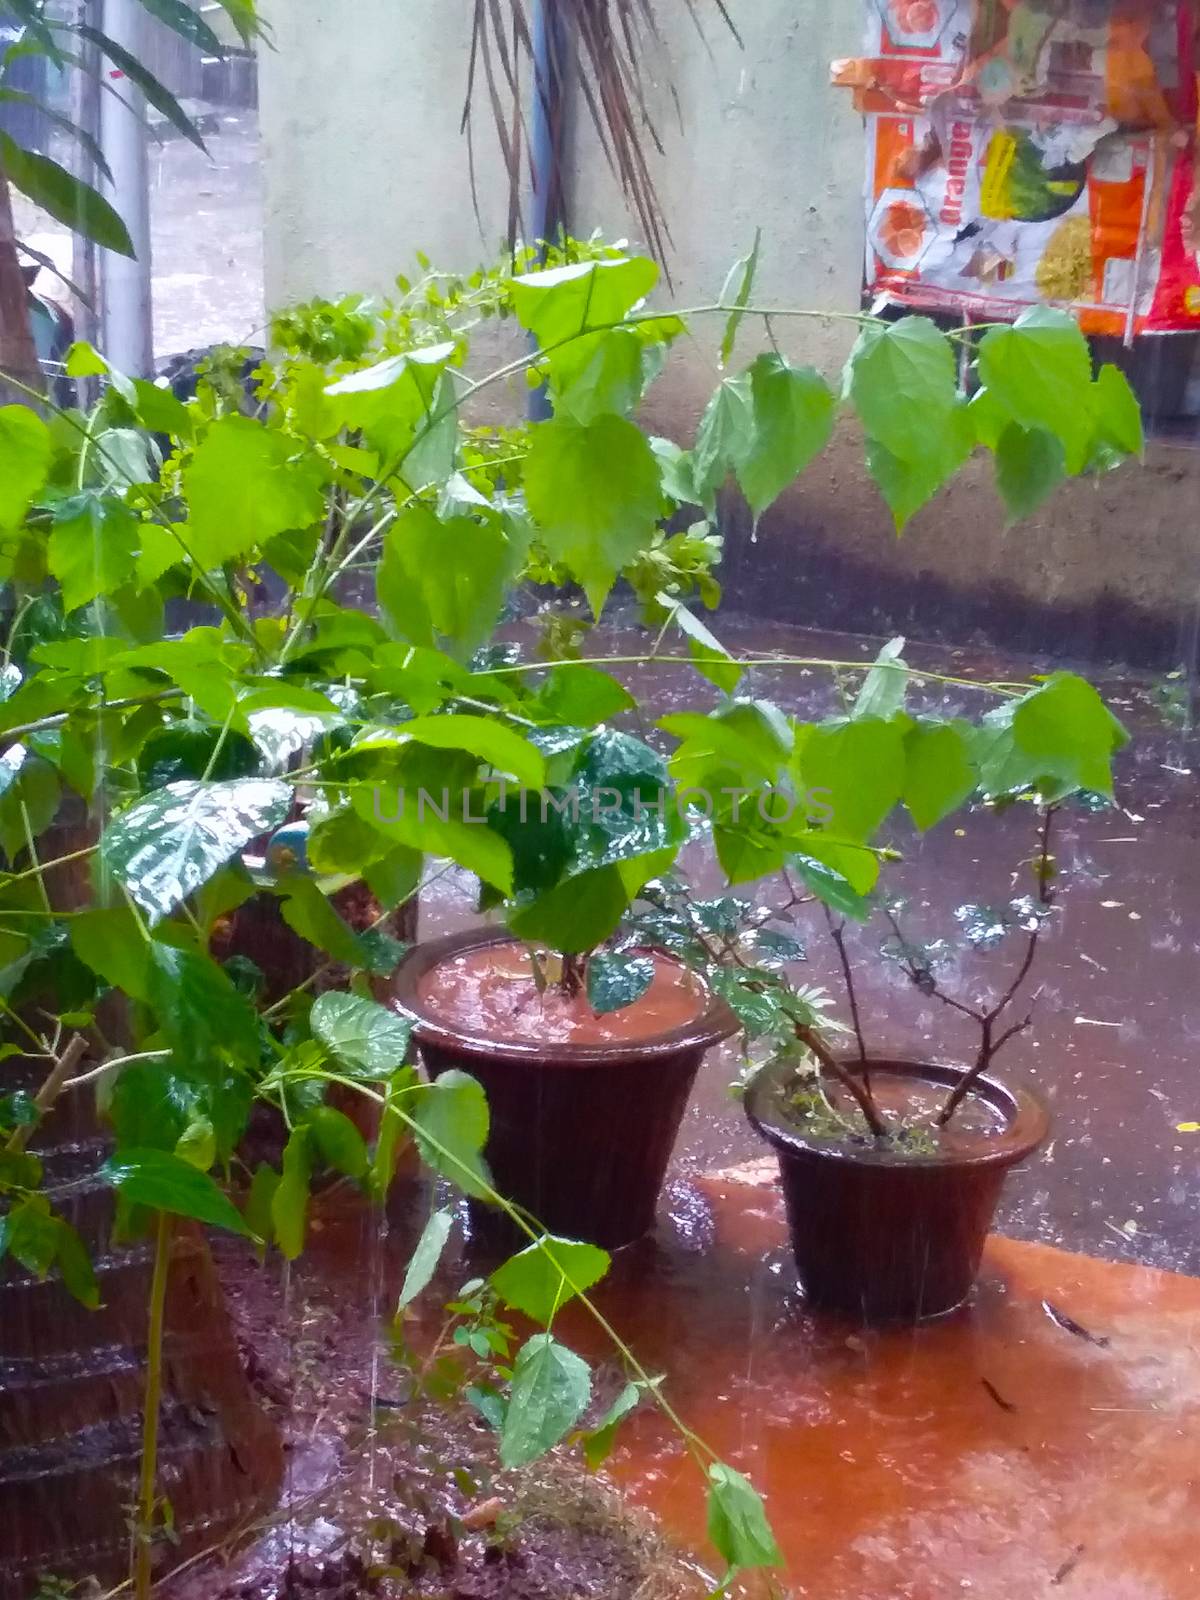 my garden in the rainy season